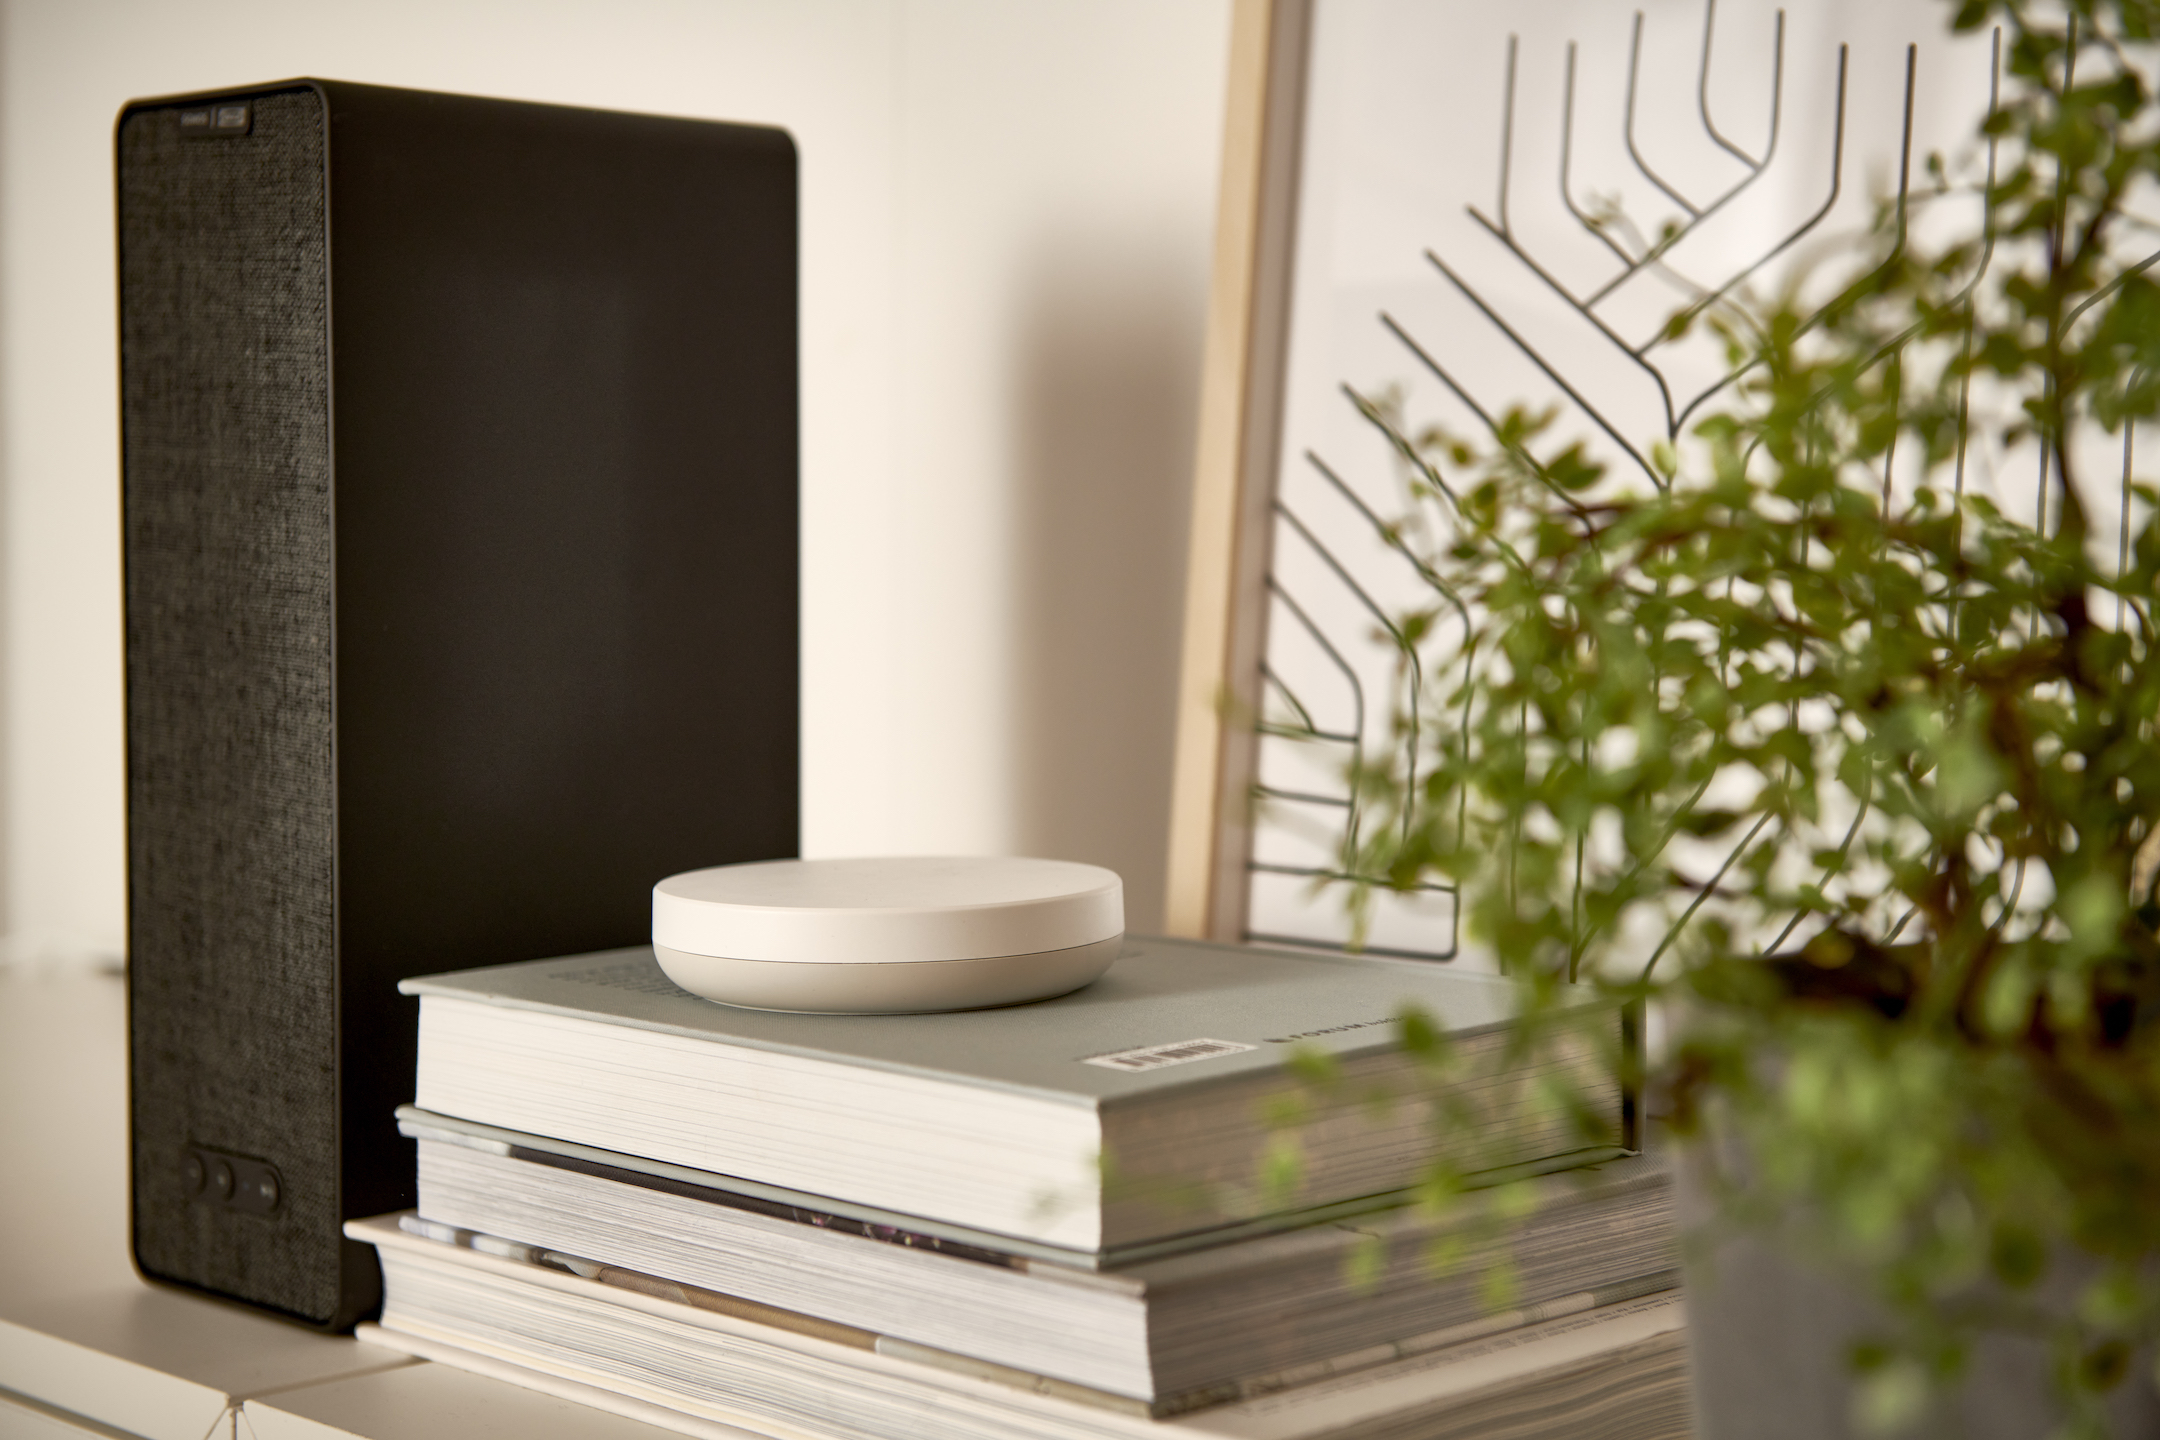 IKEA DIRIGERA è un hub per la smart home a prova di futuro e che supporta Matter